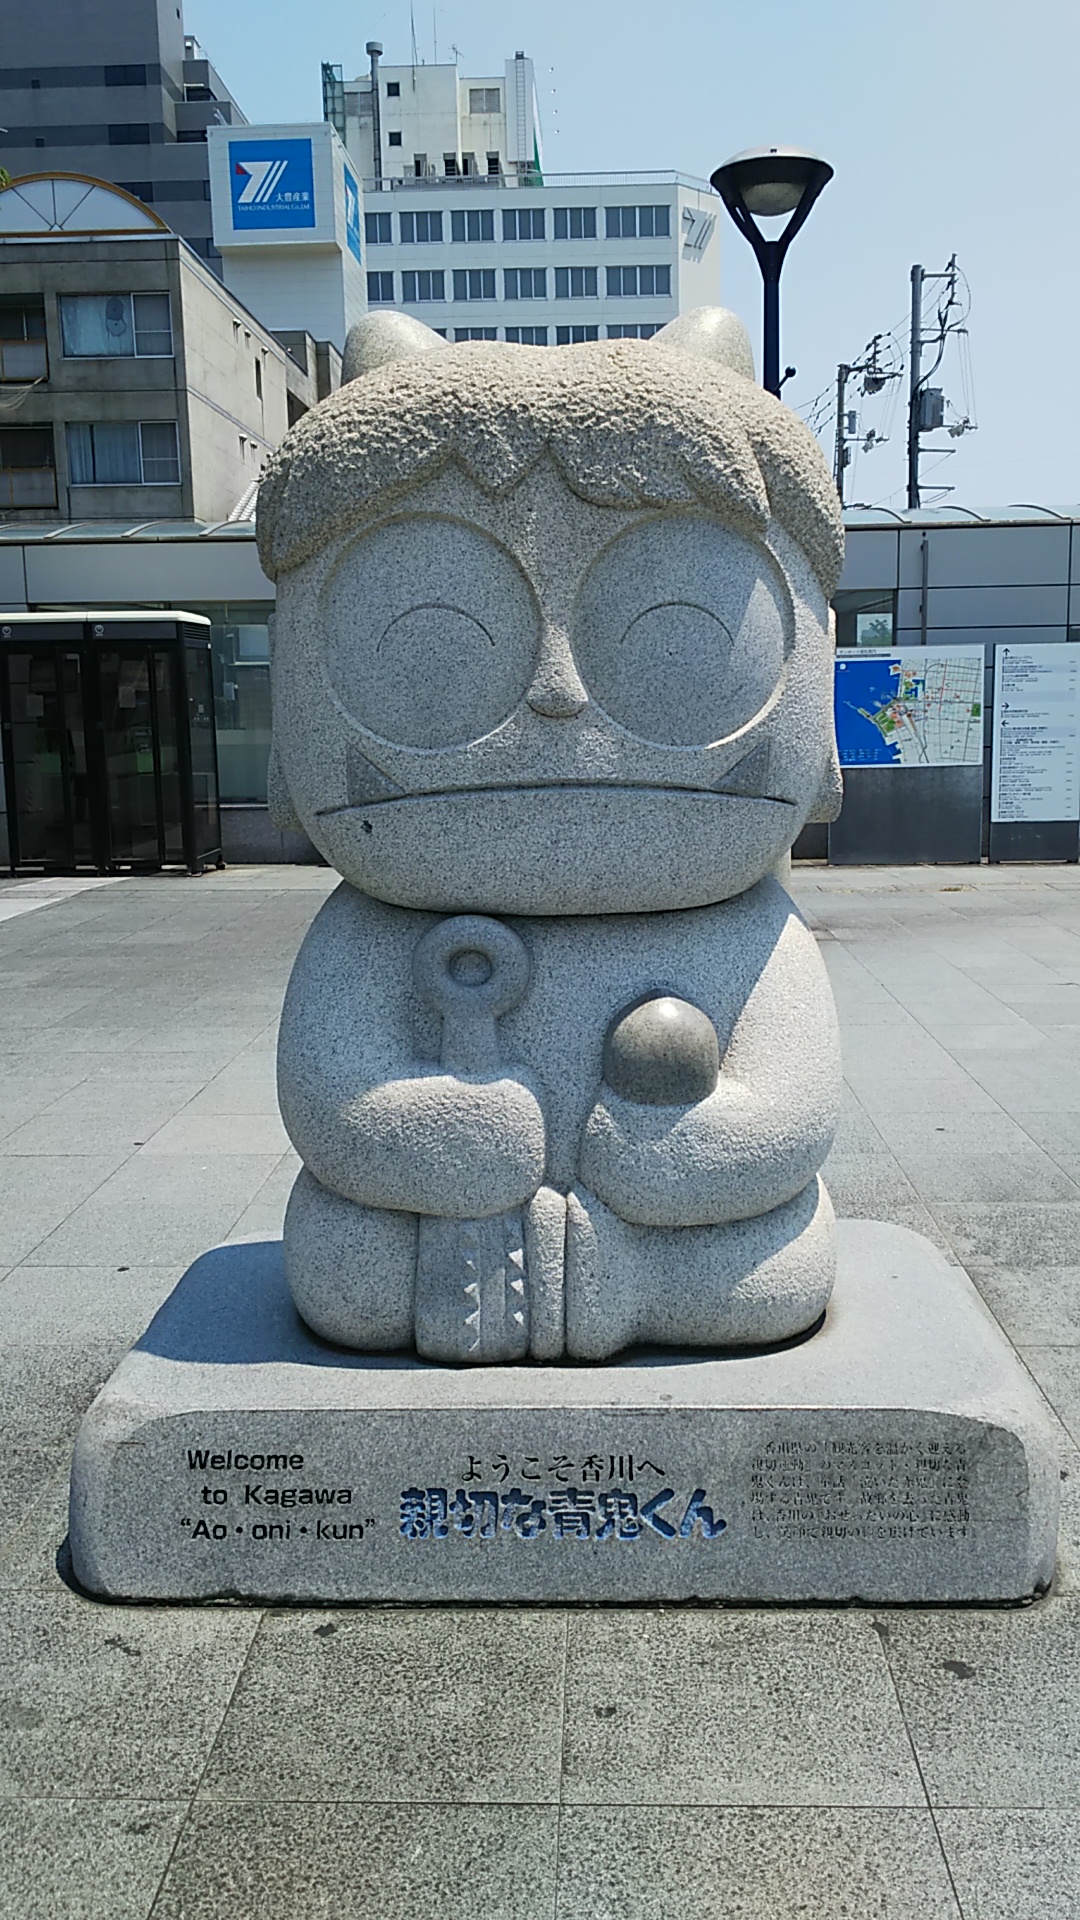 男木島と対になる女木島は桃太郎伝説の鬼が島に比定されるので、高松駅に鬼の像が